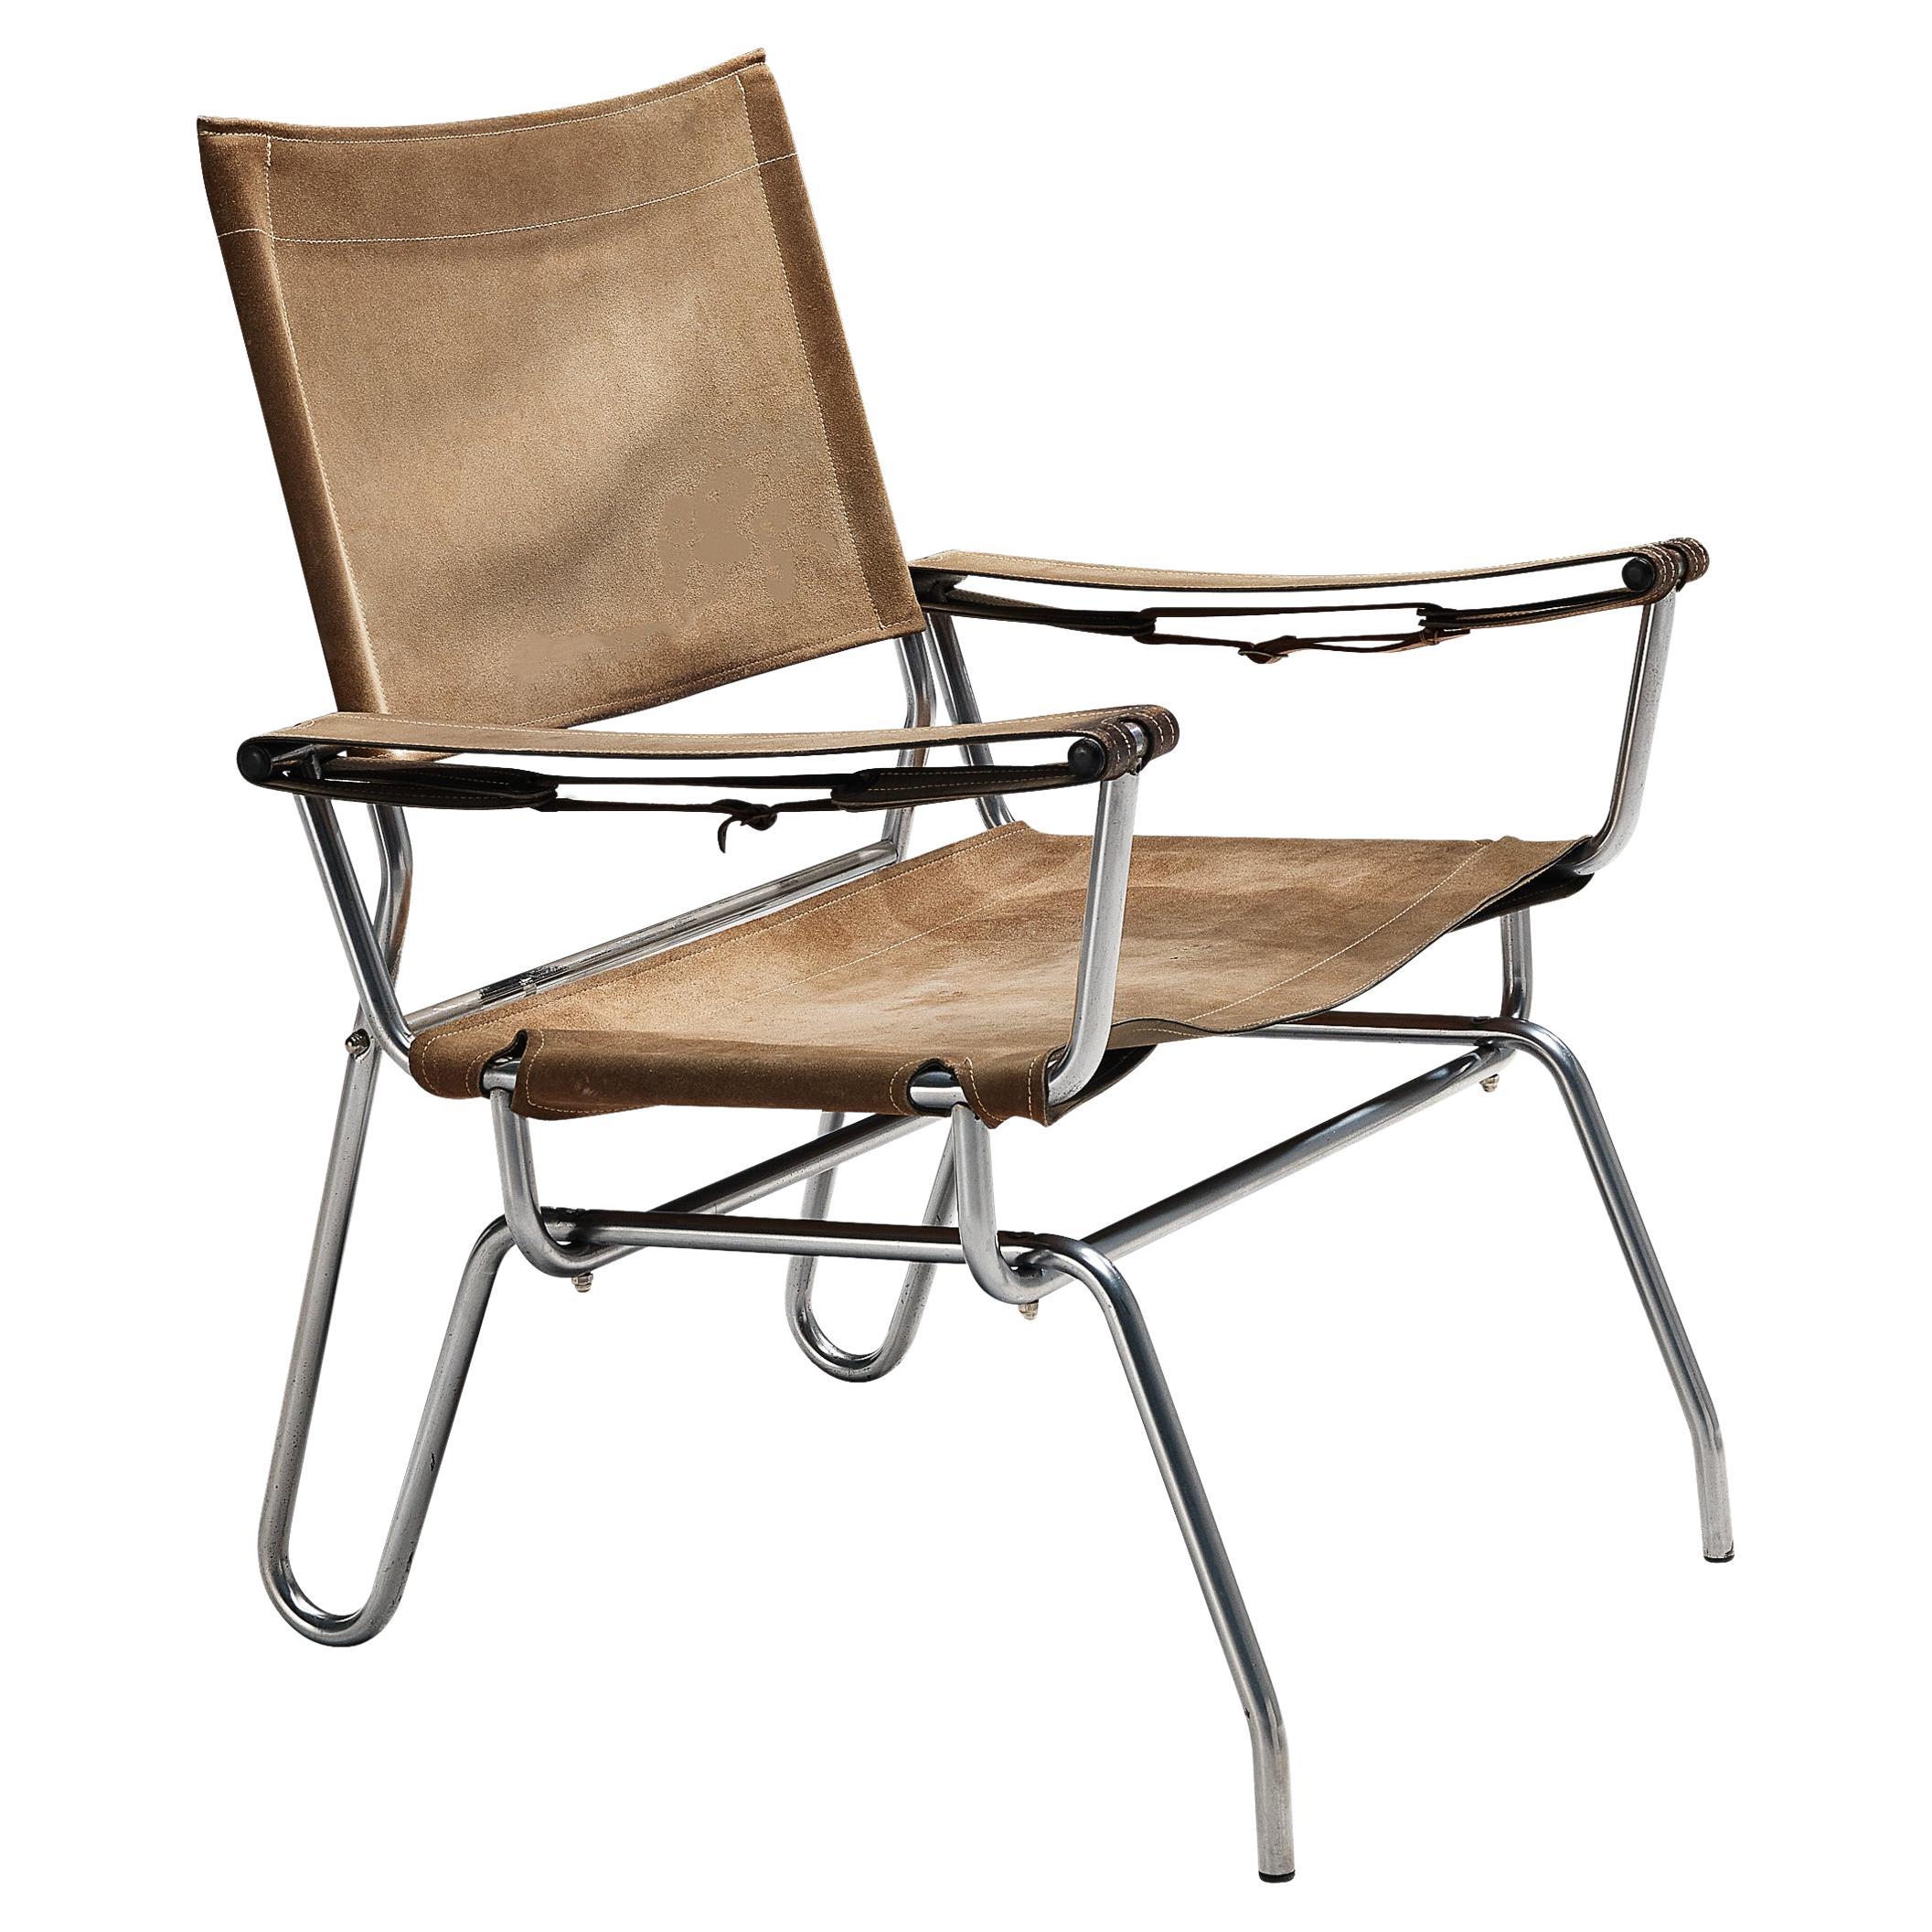 A. A. Dolleman für Metz & Co. Sessel aus Wildleder mit Metallrohrgestell